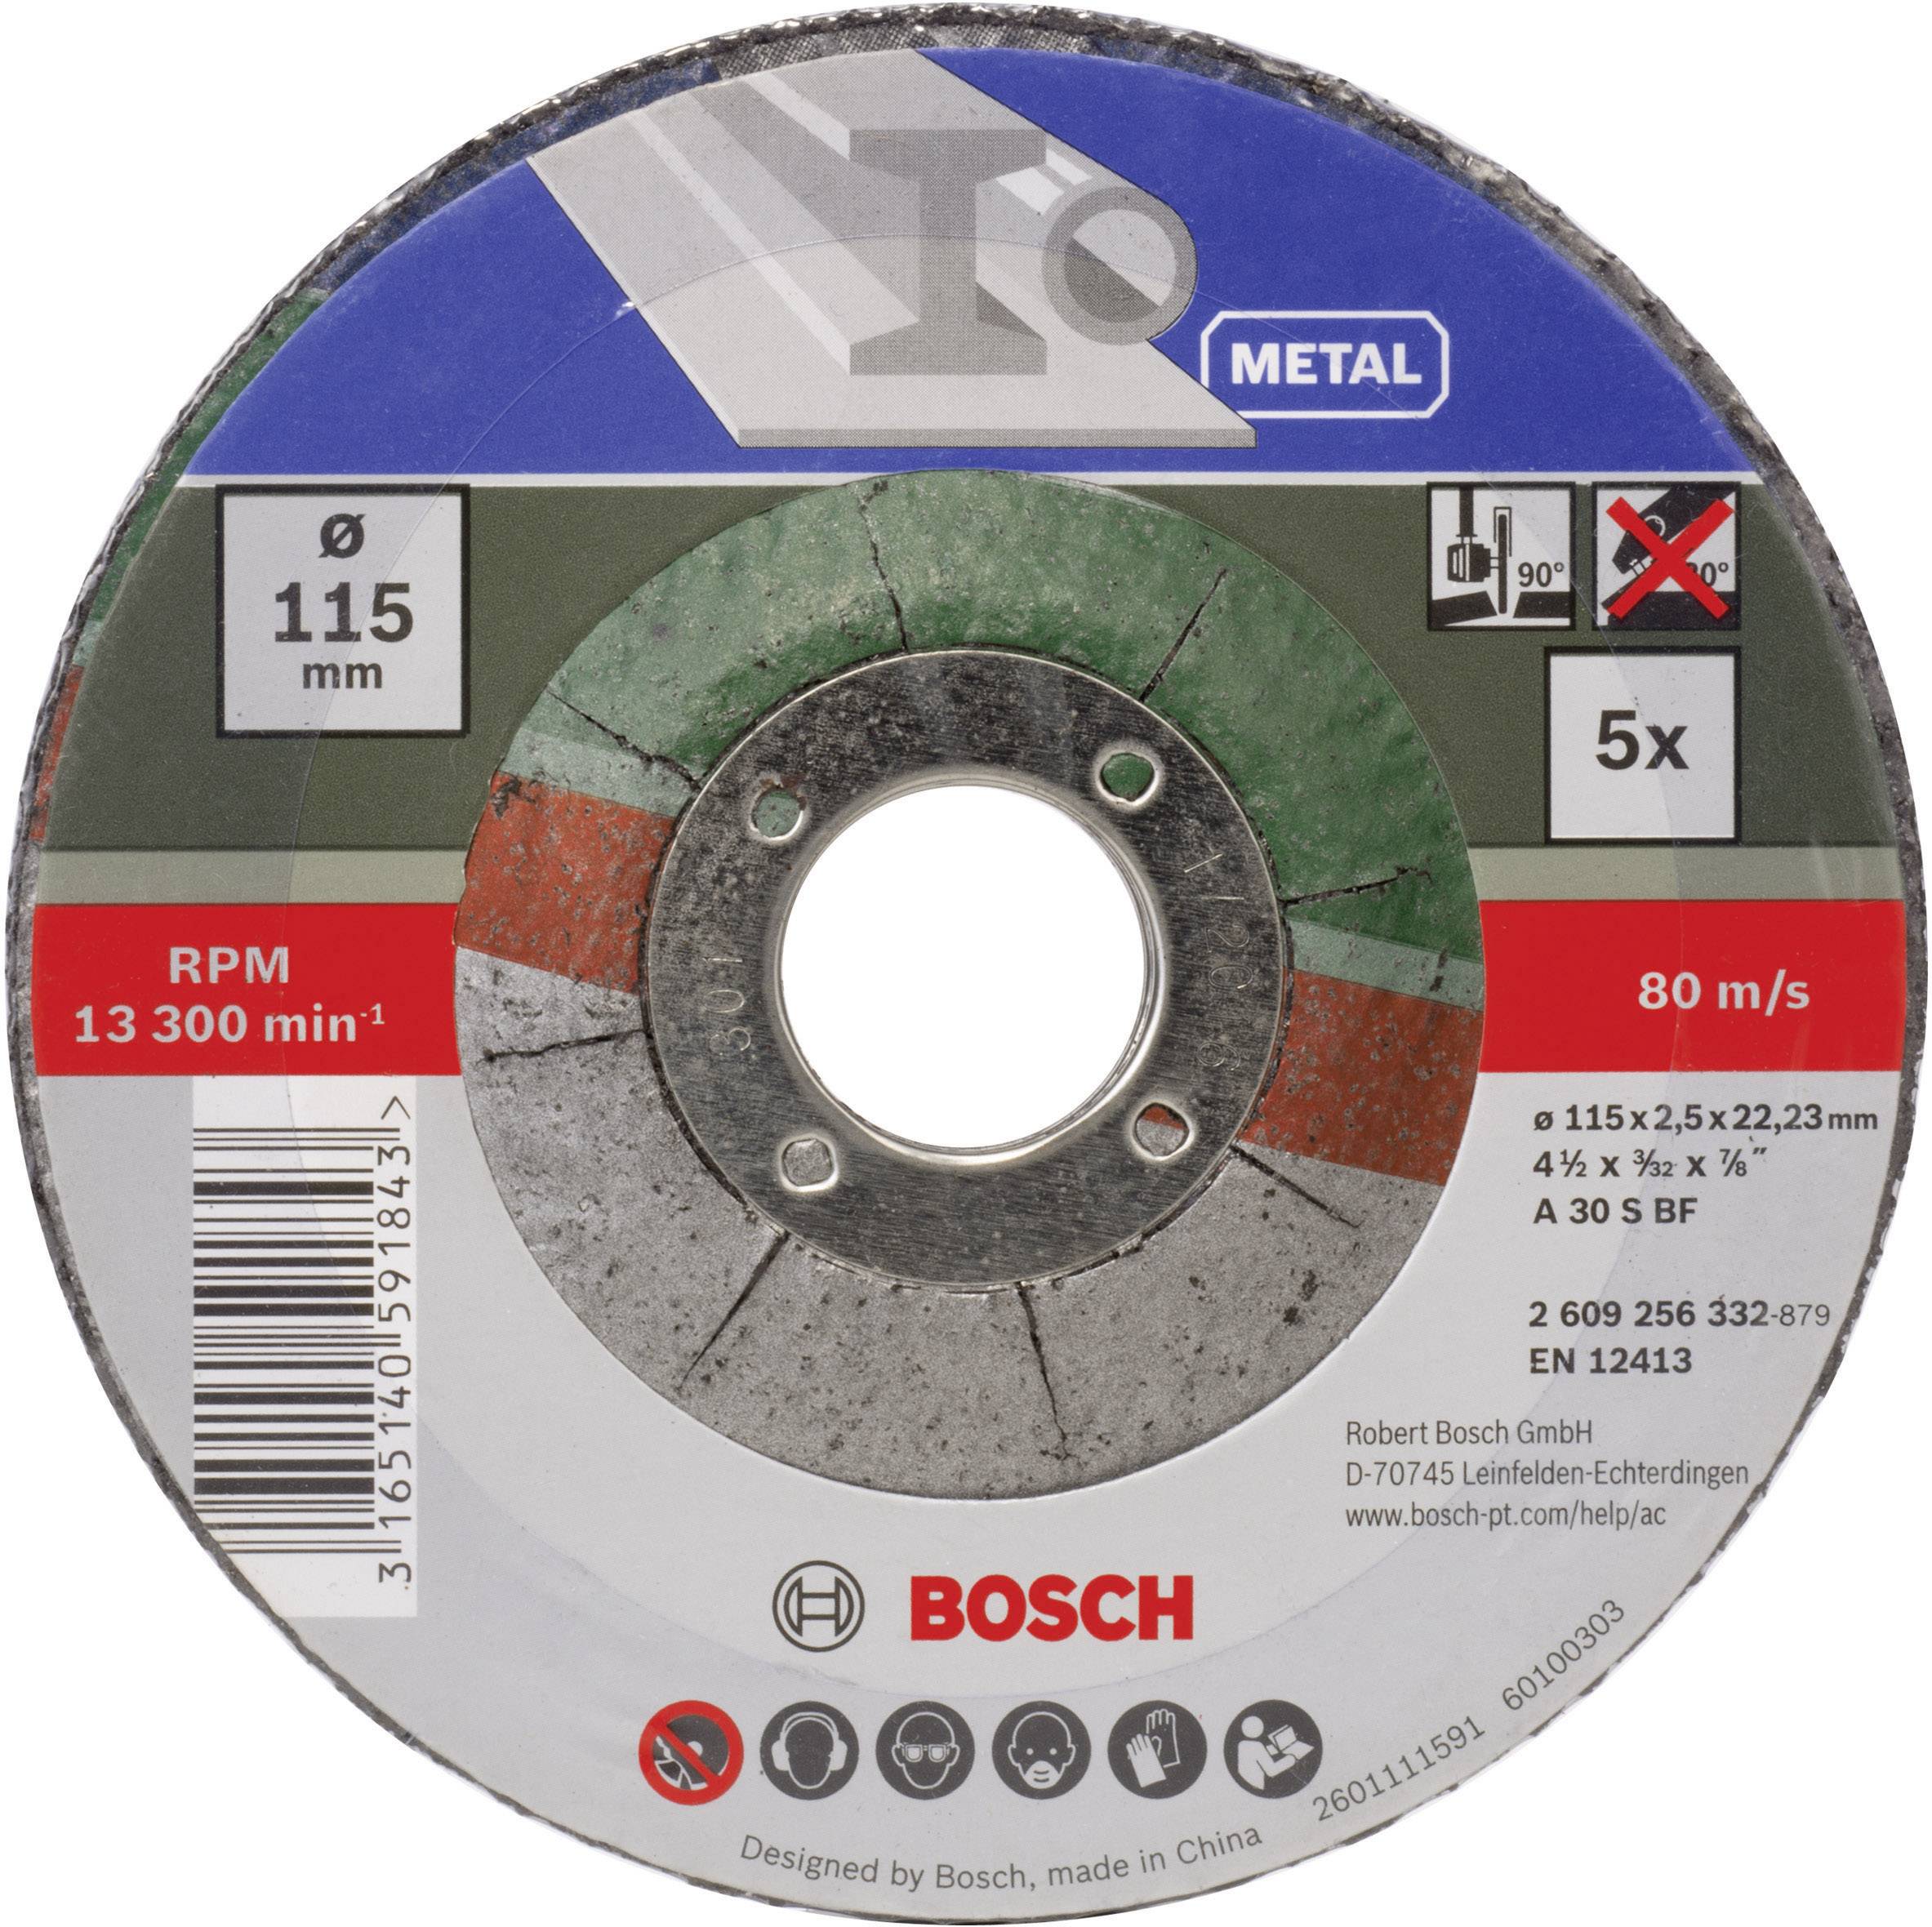 BOSCH _EW Bosch 5tlg. Trennscheiben-Set gekröpft für Metall Durchmesser 115 mm 2609256332 5 St. (260